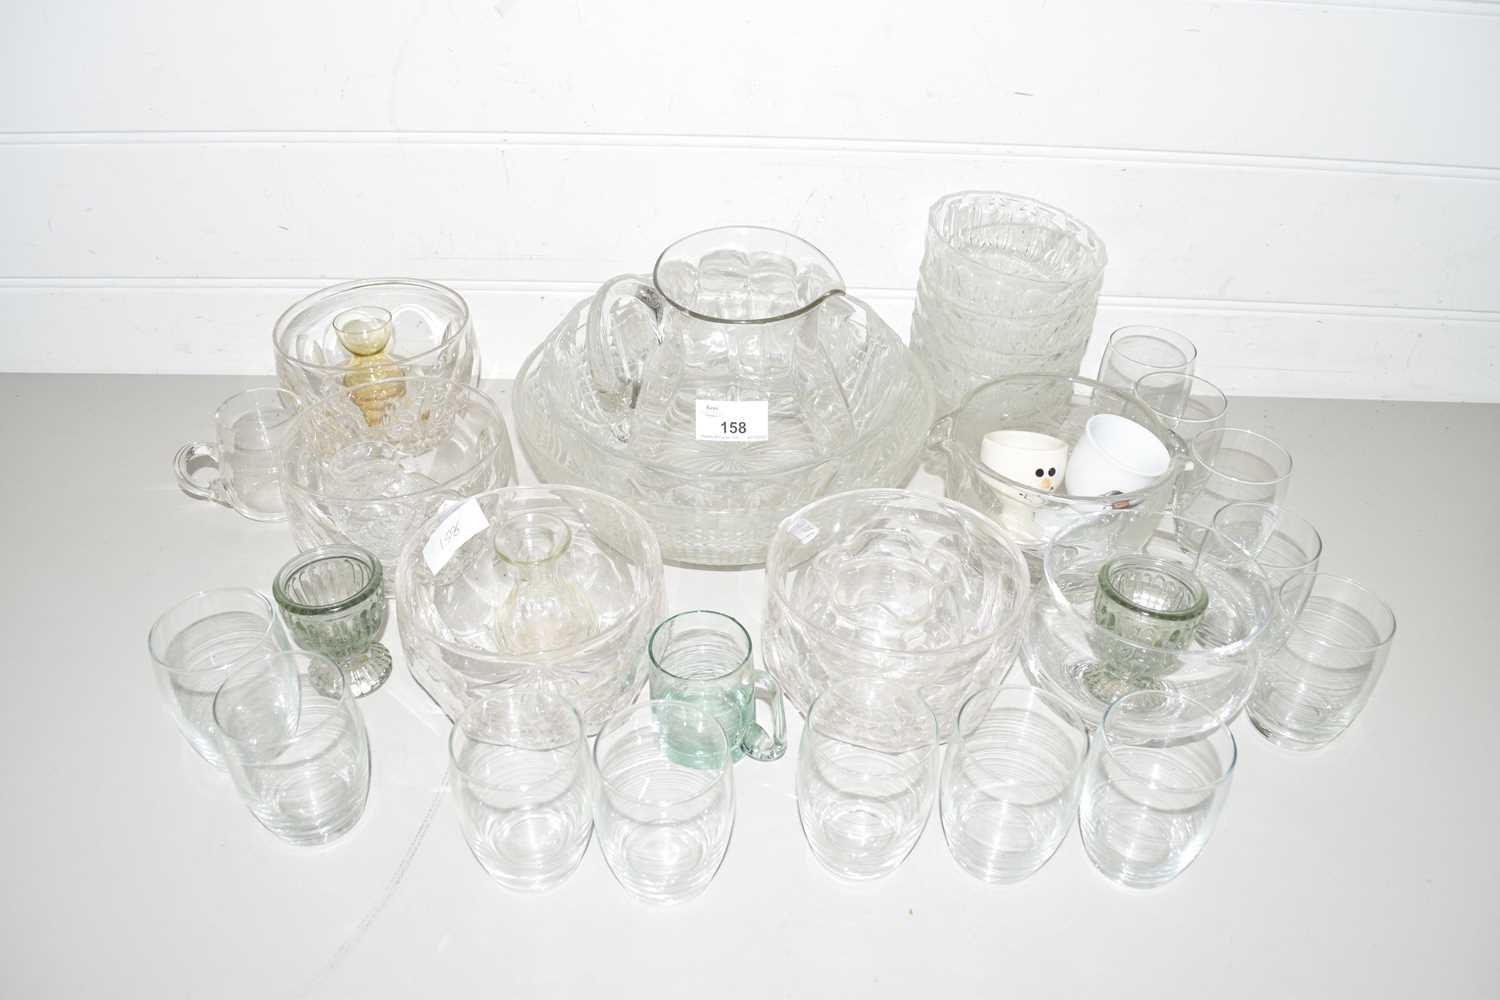 QUANTITY OF GLASS WARES, SMALL GLASS DESSERT BOWLS ETC